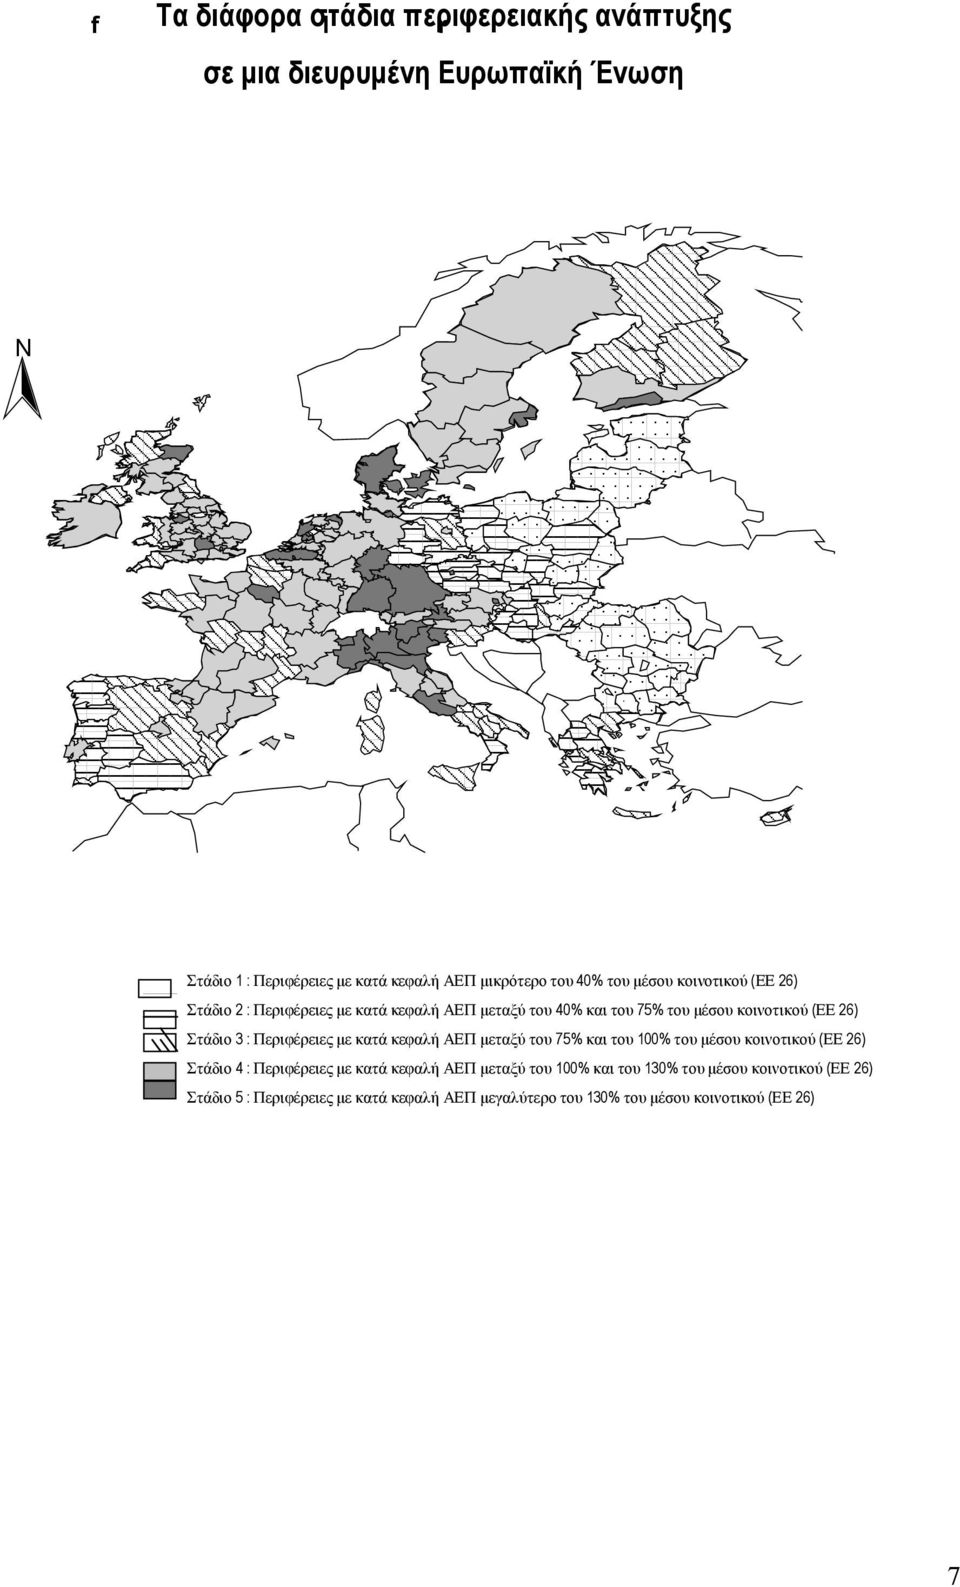 Στάδιο 3: Περιφέρειες µεκατάκεφαλήαεπµεταξύ του 75% και του 100% του µέσου κοινοτικού (ΕΕ 26) Στάδιο 4: Περιφέρειες